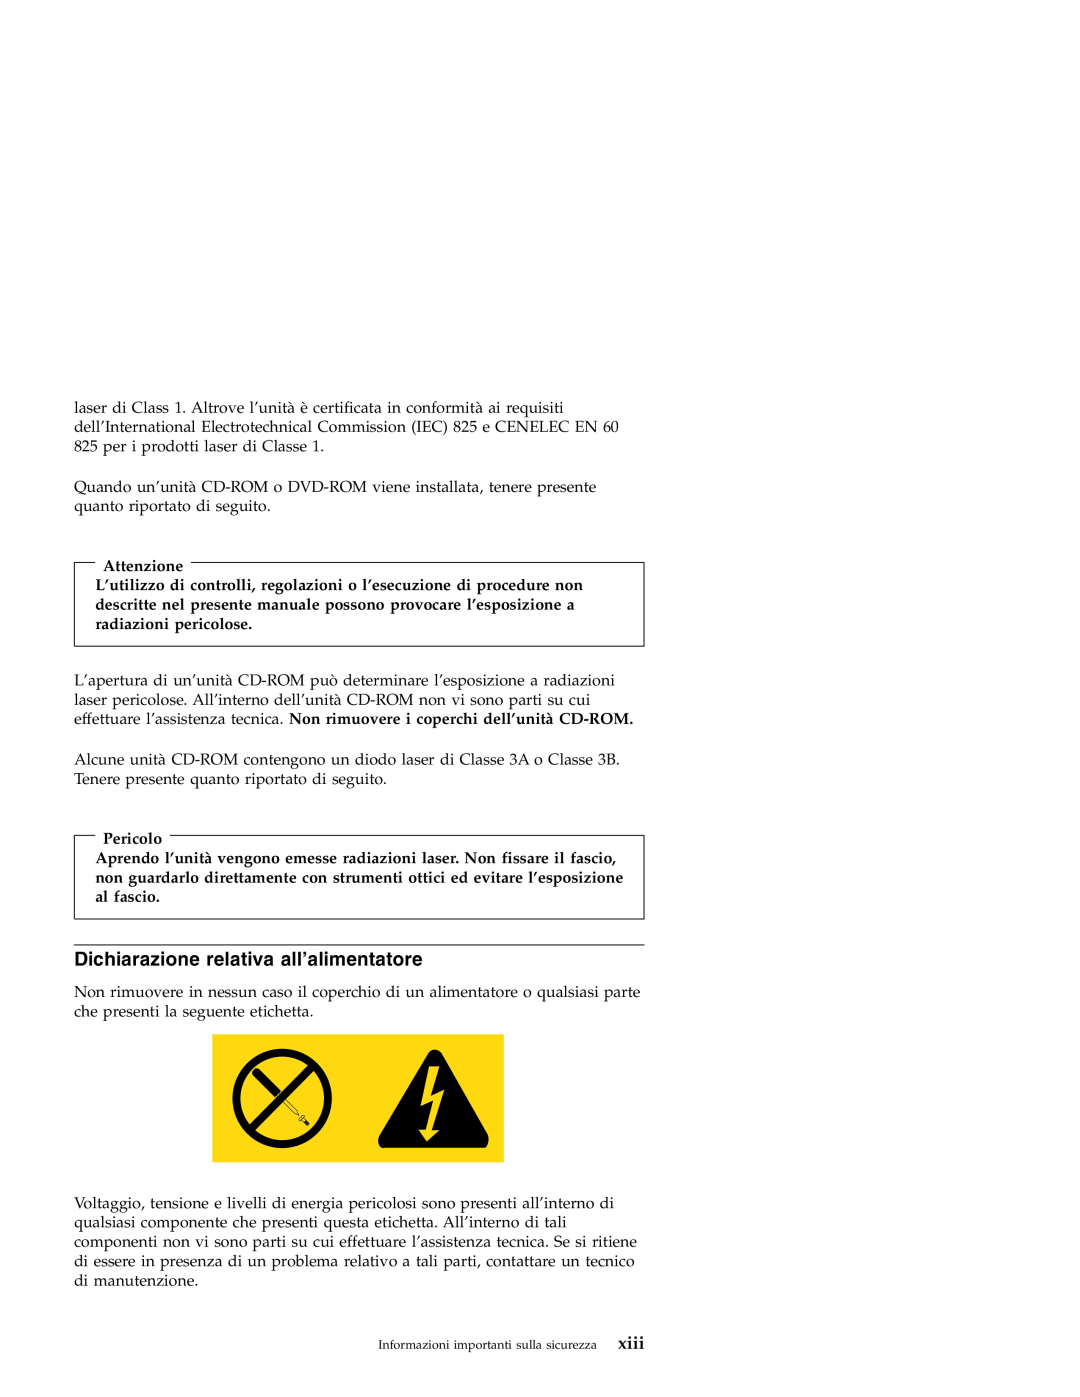 Lenovo 3000 SERIE J manual Dichiarazione relativa all’alimentatore, xiii, Attenzione, Pericolo 